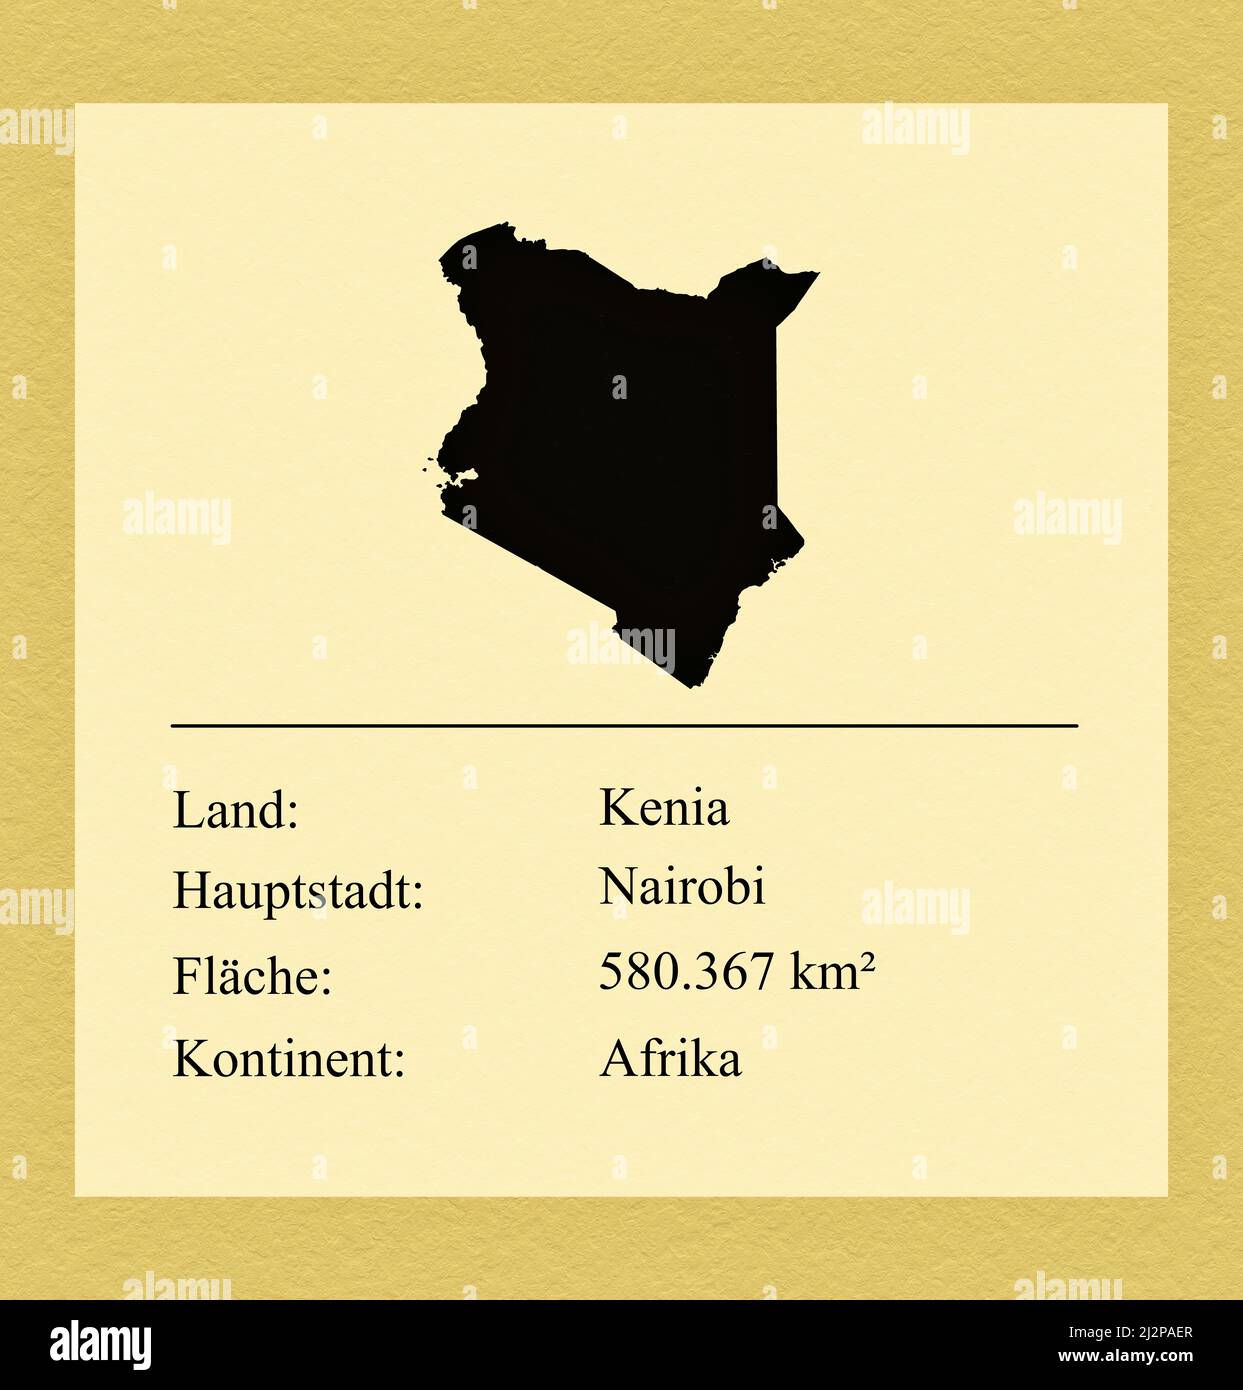 Umrisse des Landes Kenia, darunter ein kleiner Steckbrief mit Ländernamen, Hauptstadt, Fläche und Kontinent Stock Photo